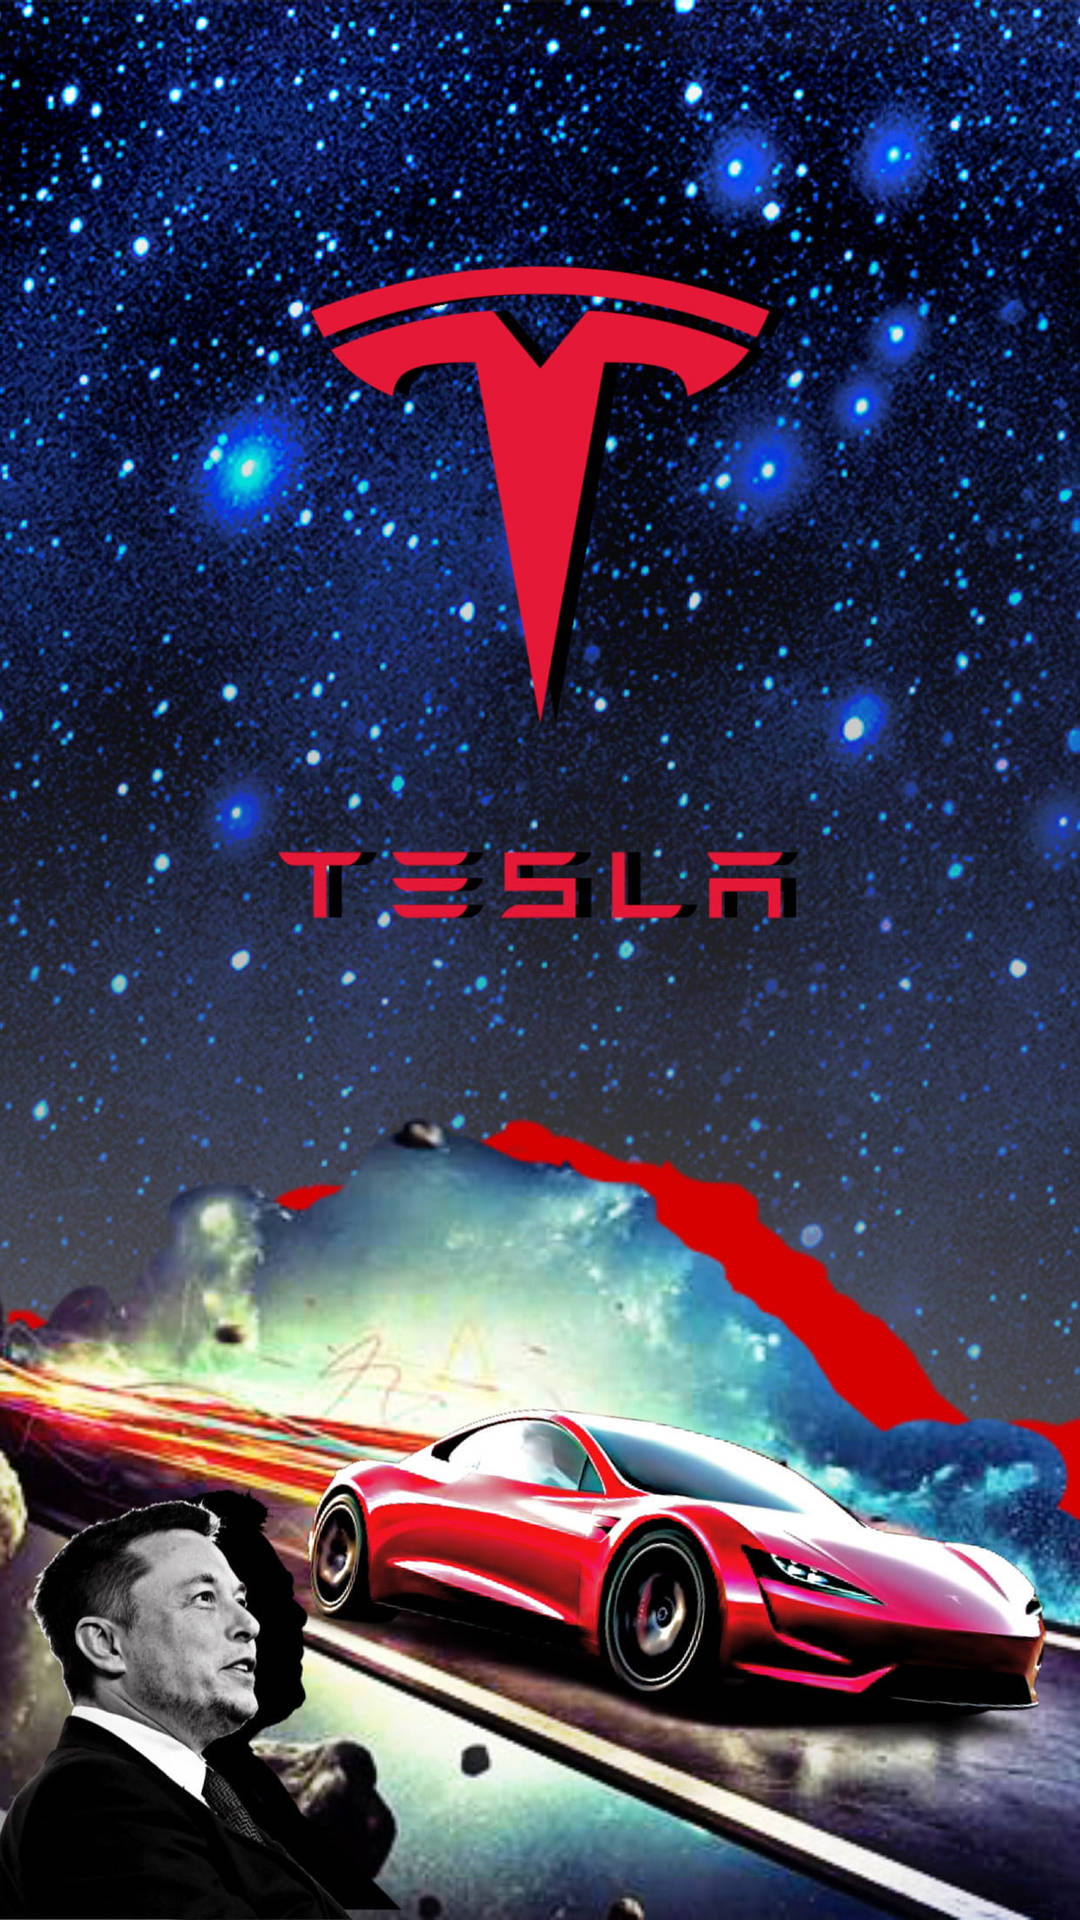 Elon Musk Tesla Car Fan Art Background